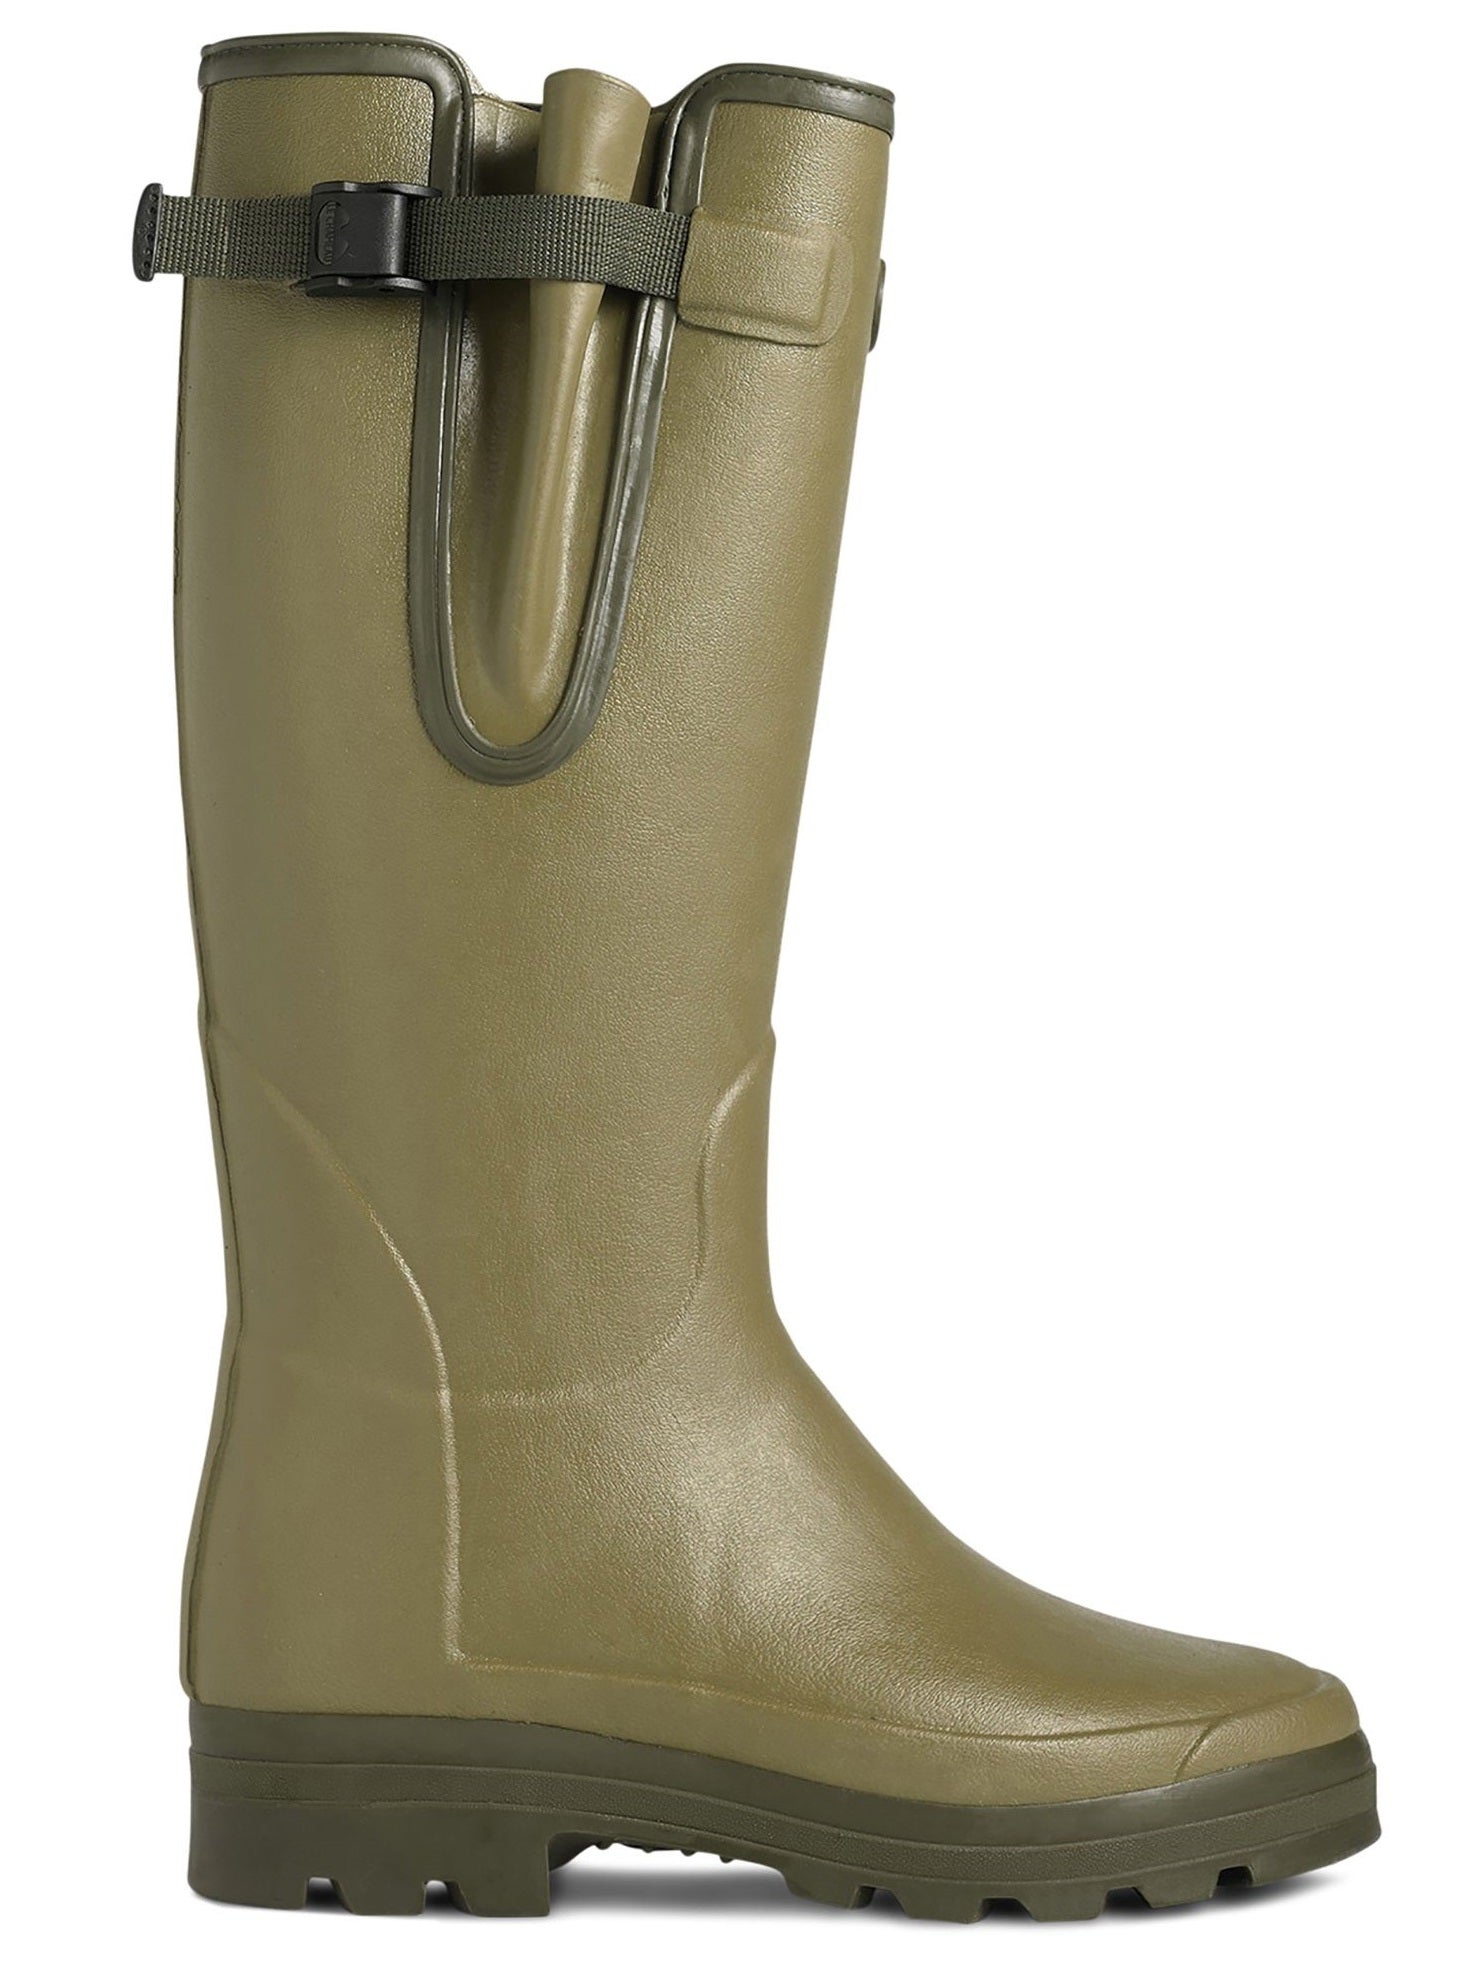 LE CHAMEAU Vierzonord Plus Cold Weather Boots - Mens Neoprene Lined - Vert Vierzon